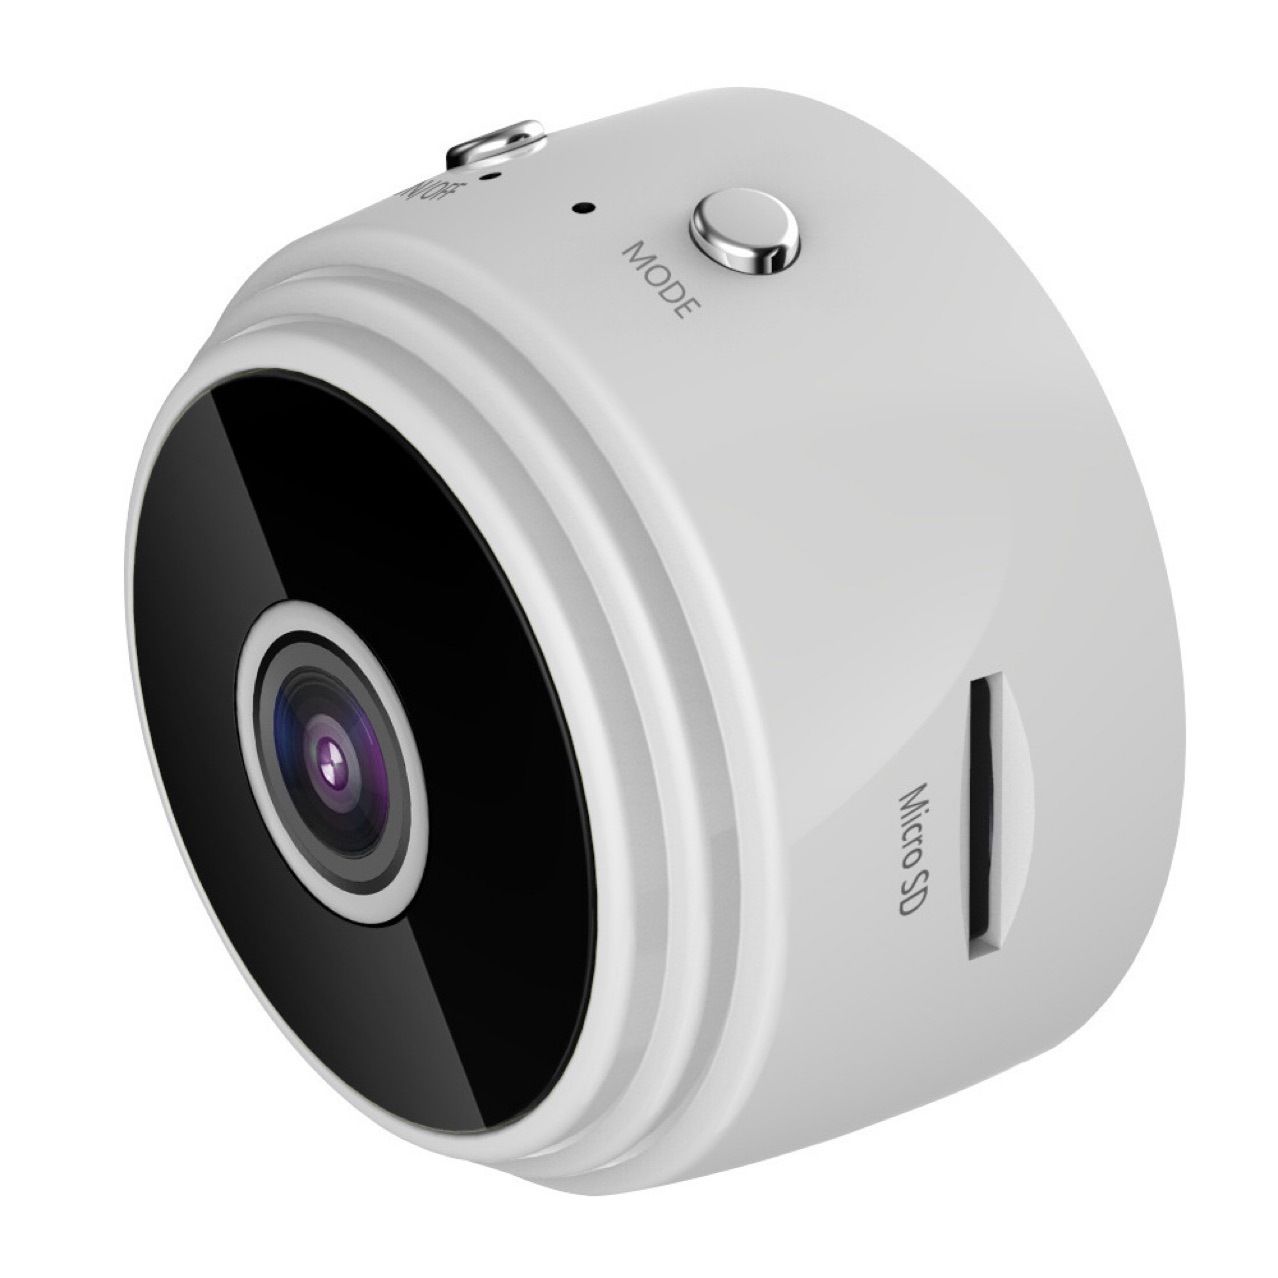 2 pièces Mini Camera Cachee Enregistreur Petite,Full HD 1080P Micro de Surveillance WiFi,Caméra Video Sécurité Bébé sans Fil Hidden ,Interieur/Exterieur, Blanc - Nouveau